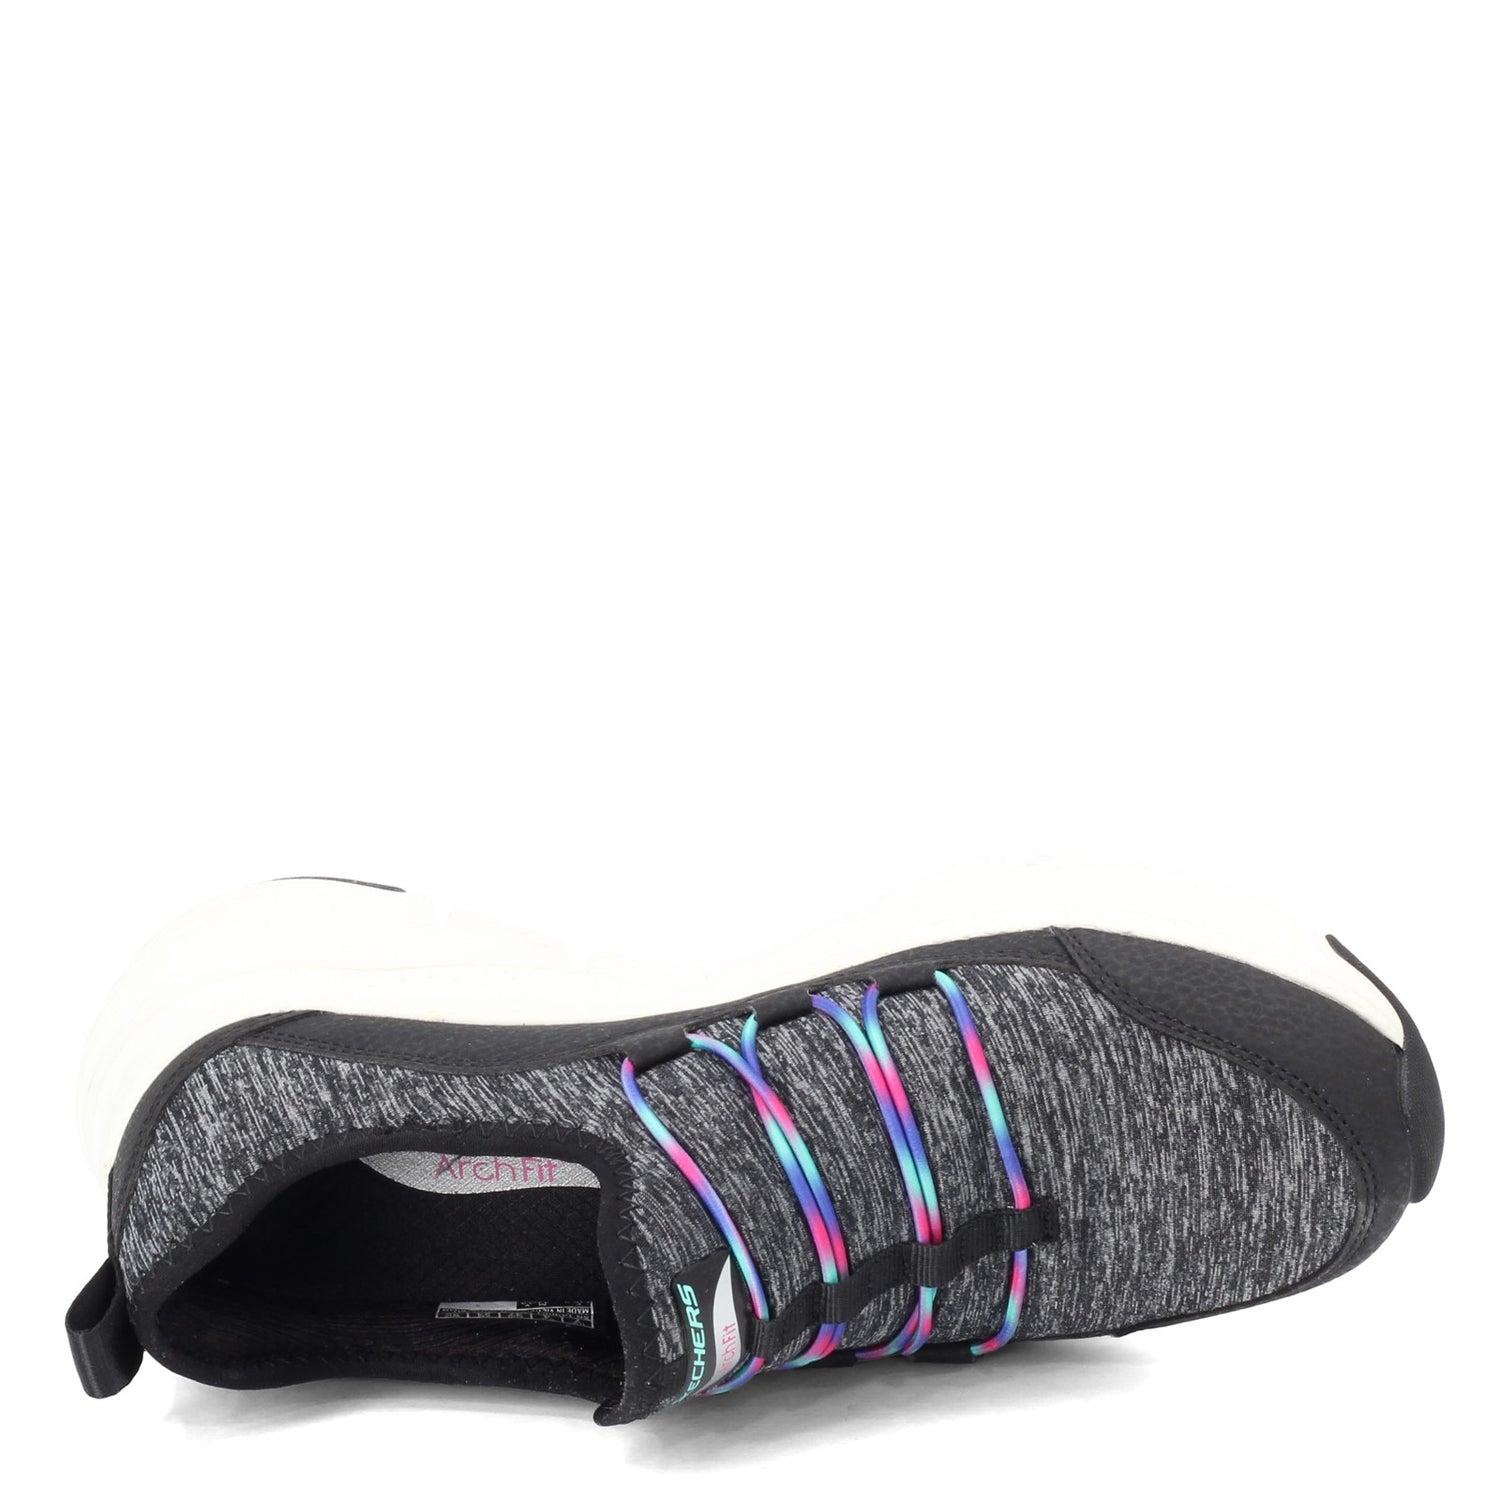 Peltz Shoes  Women's Skechers Arch Fit - Rainbow View Sneaker BLACK MULTI 149061-BKMT